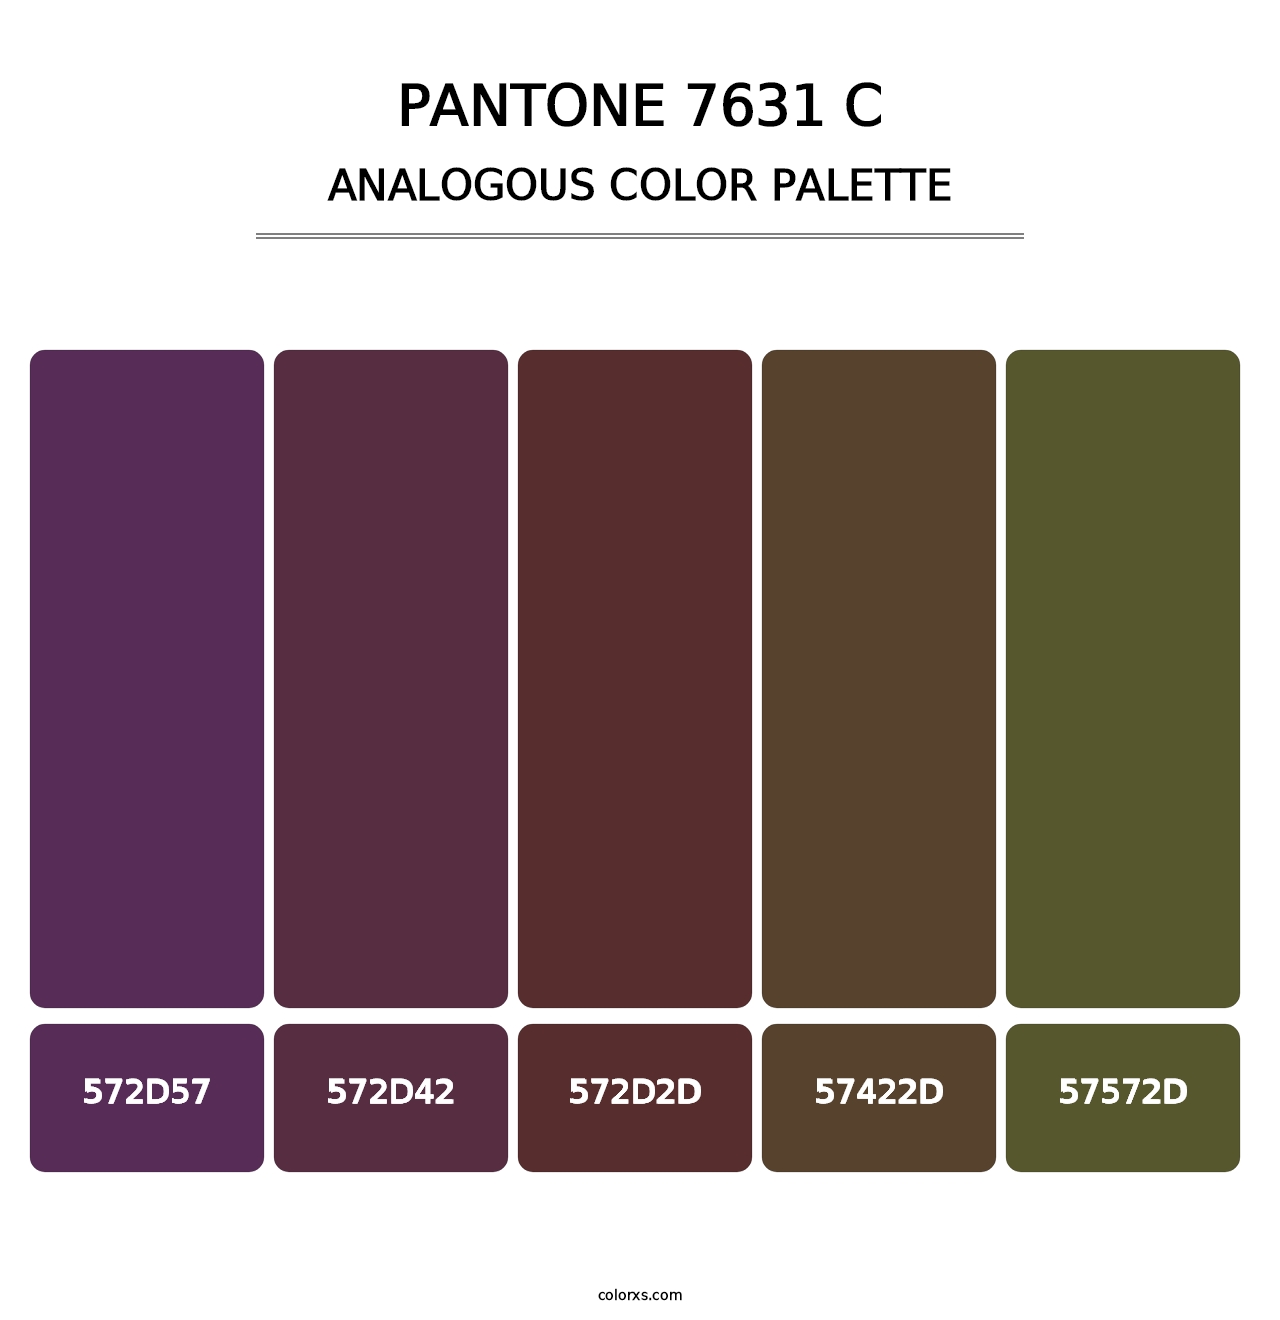 PANTONE 7631 C - Analogous Color Palette